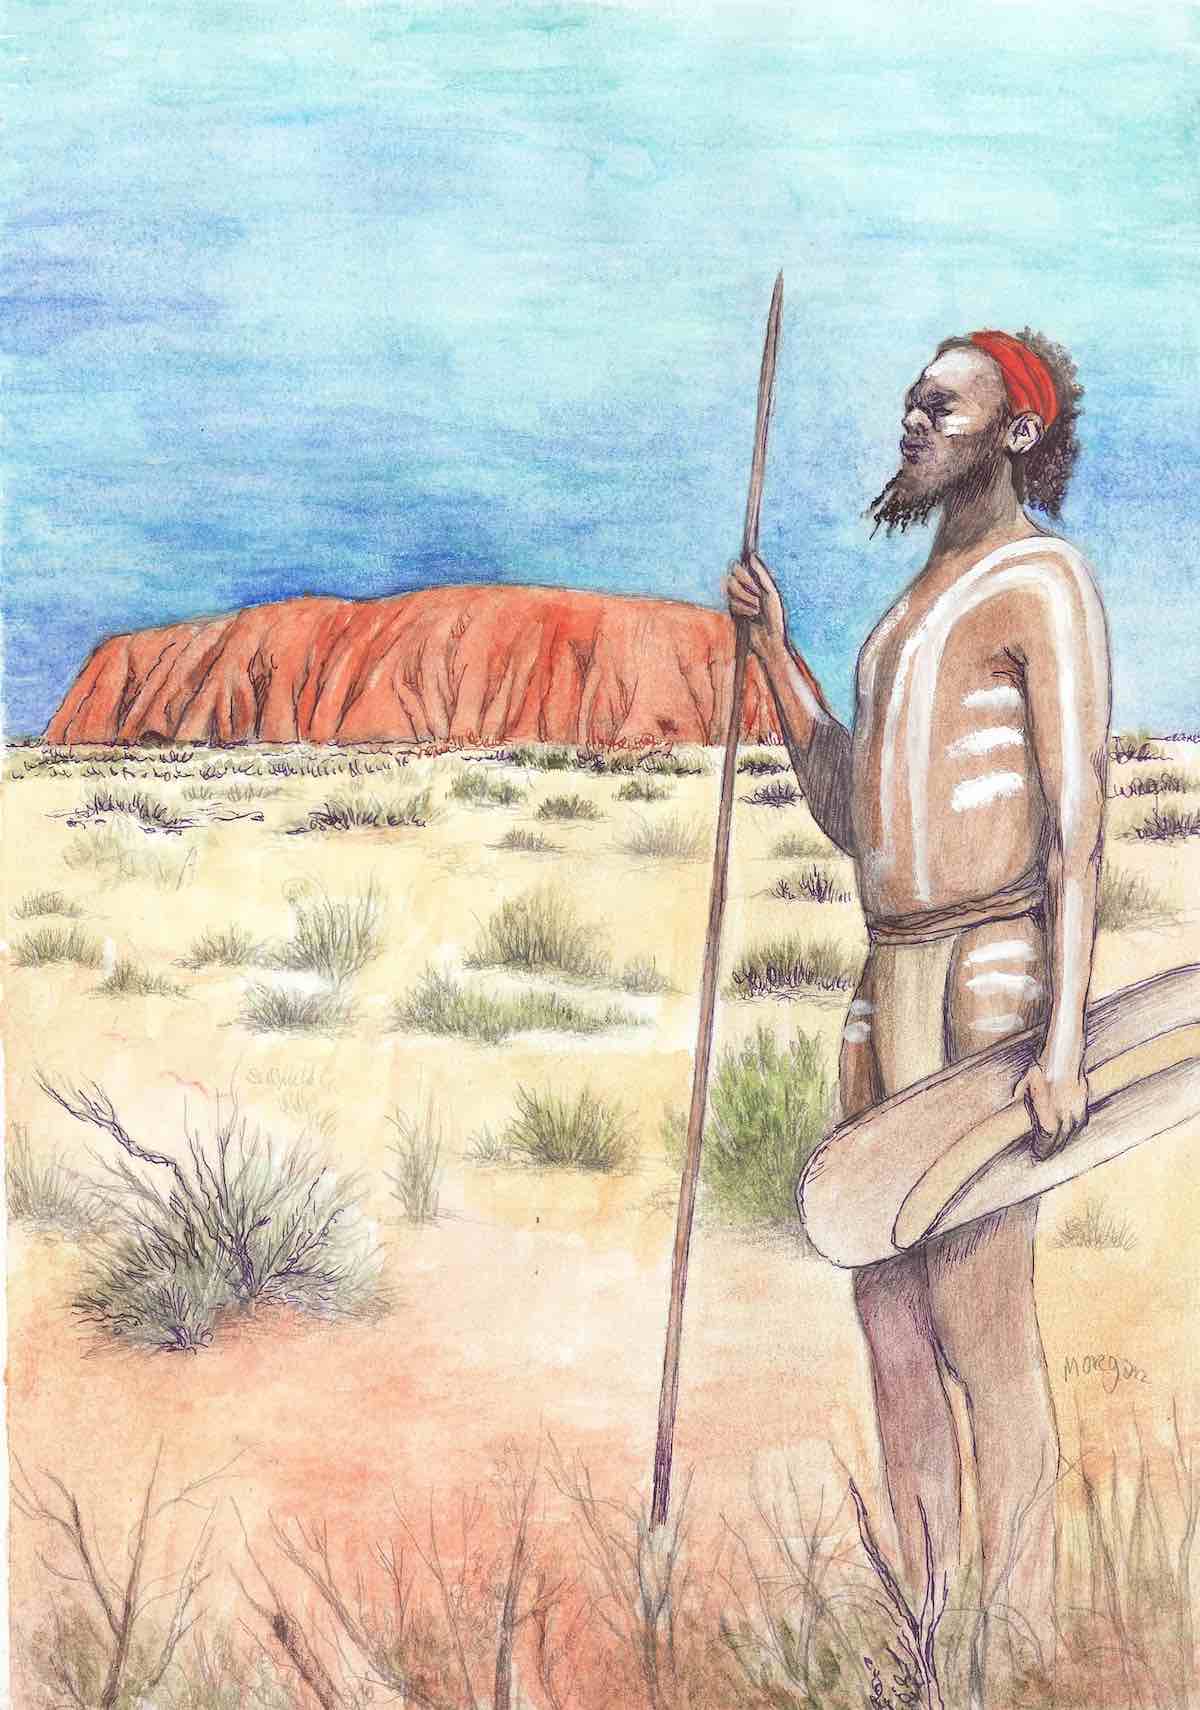 Aborigins